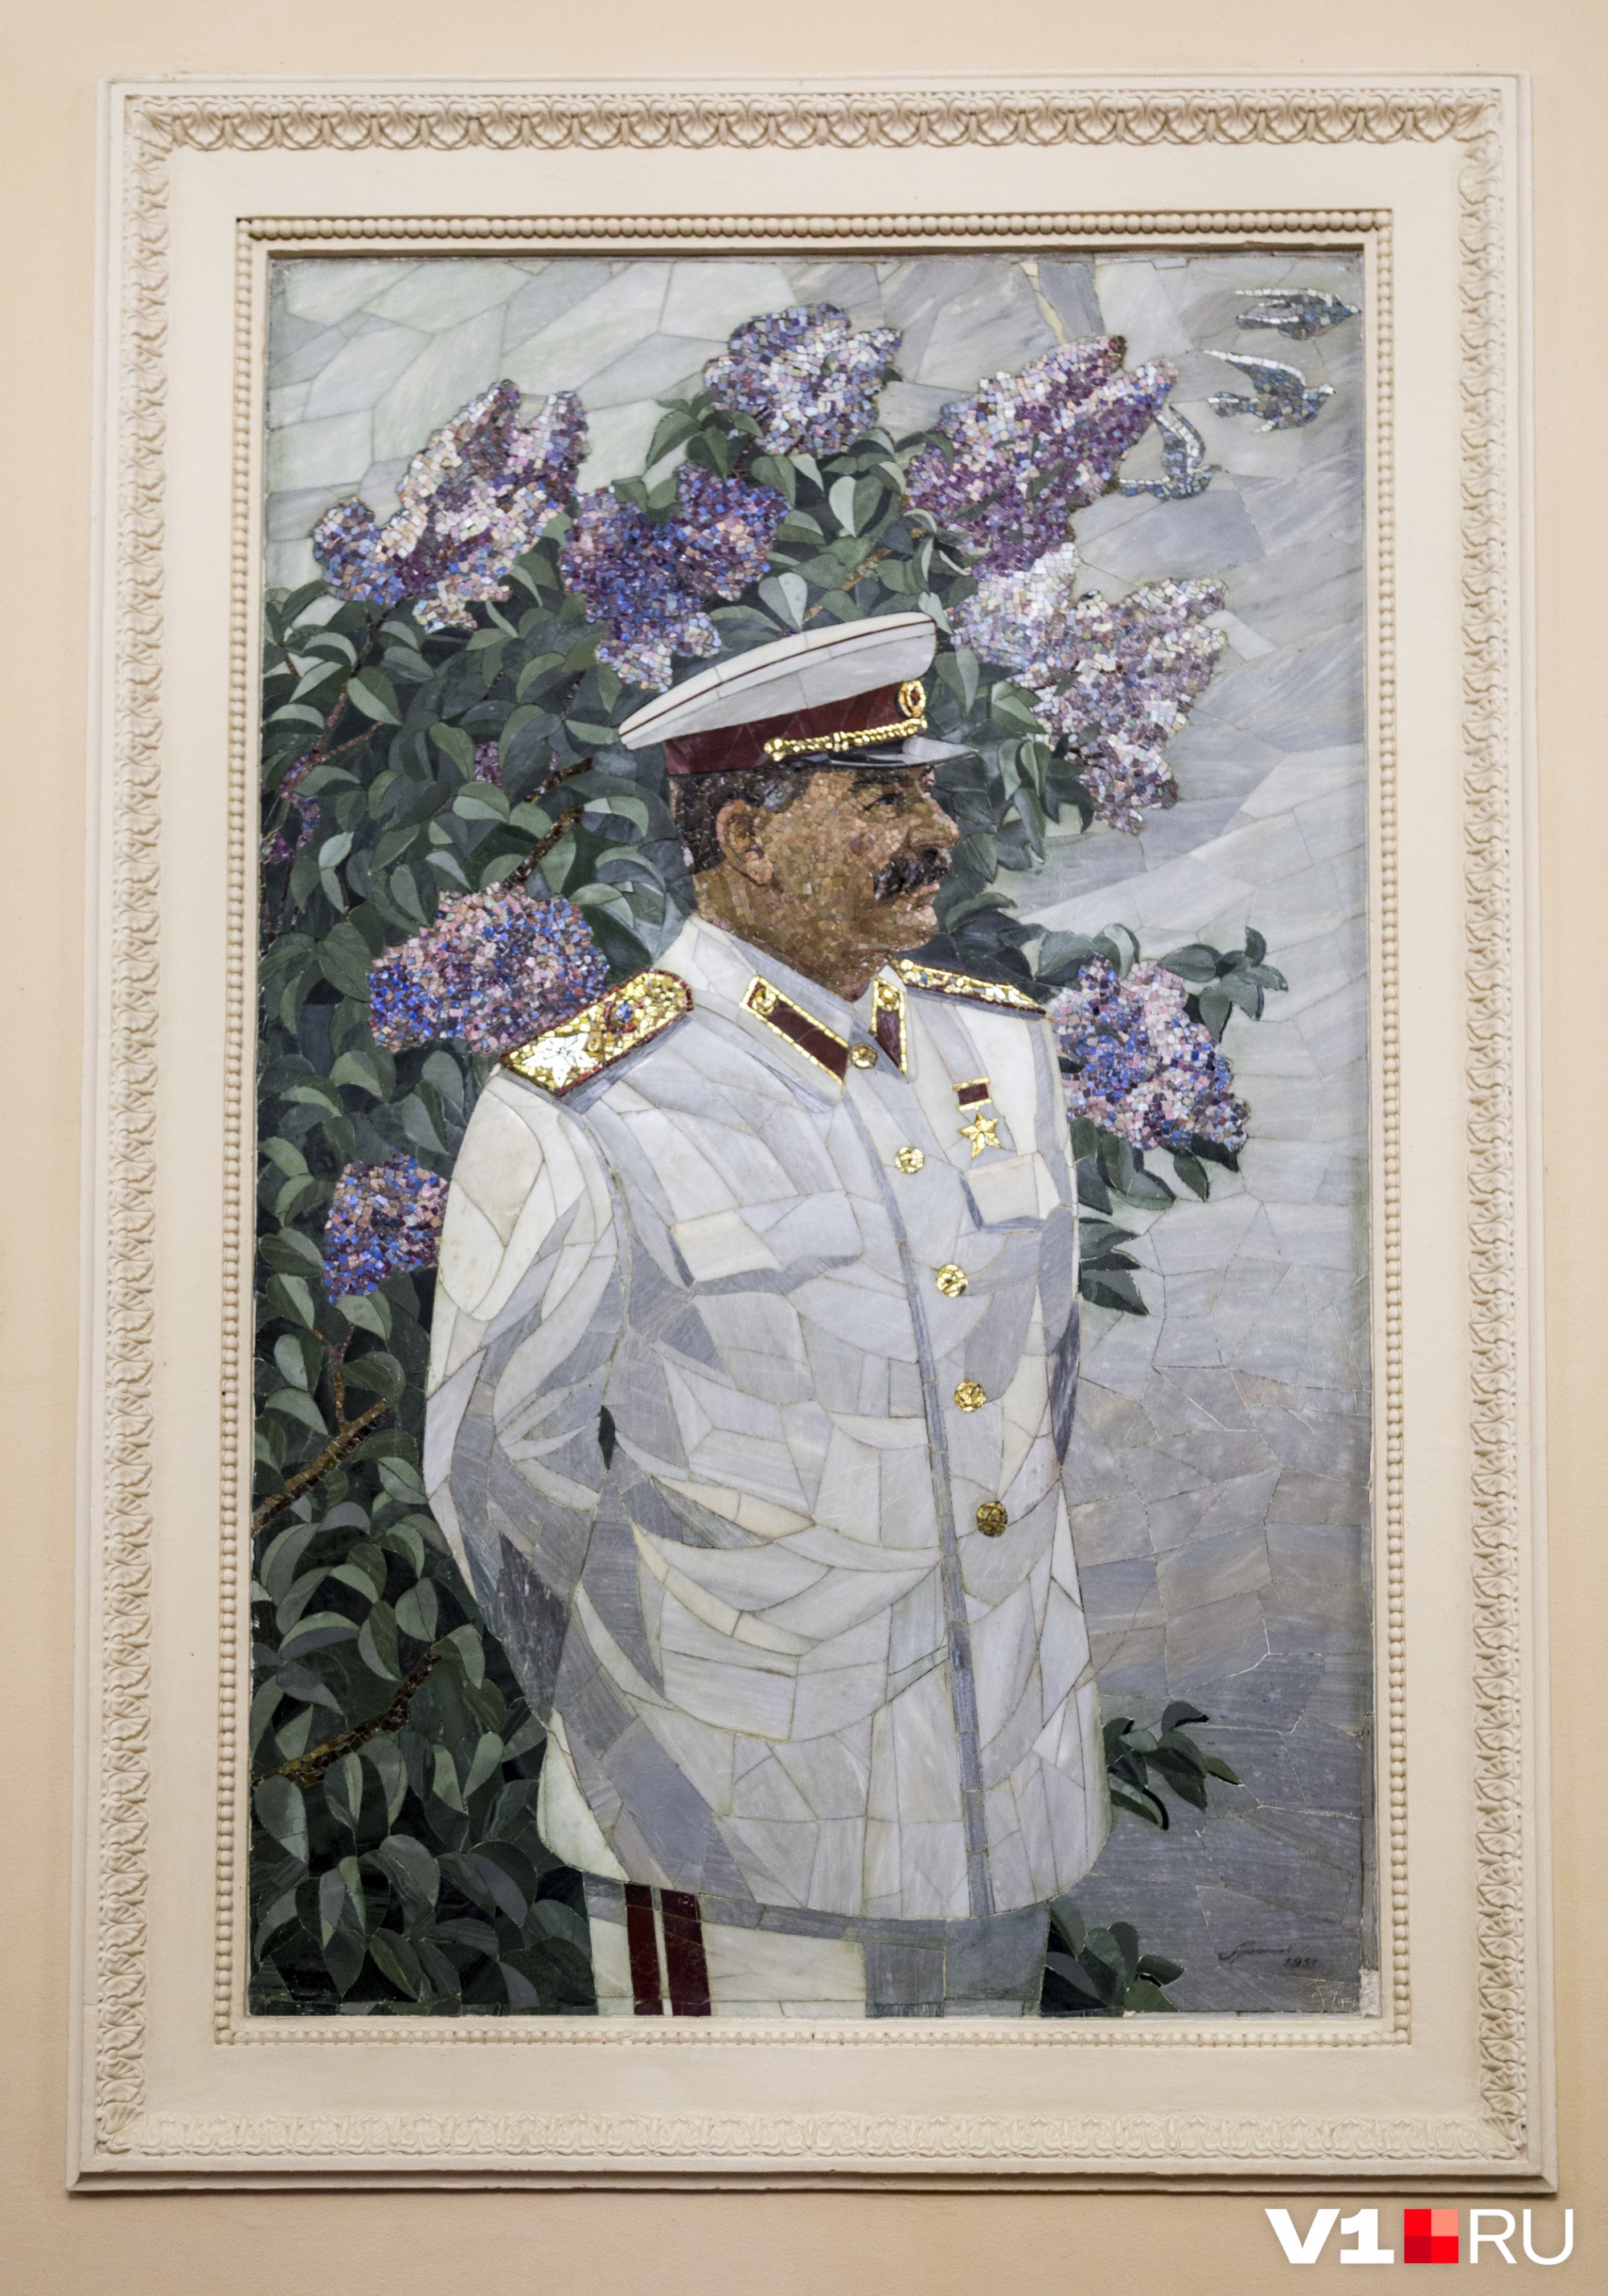 Мозаичный портрет Иосифа Сталина сохранили в волгоградском планетарии